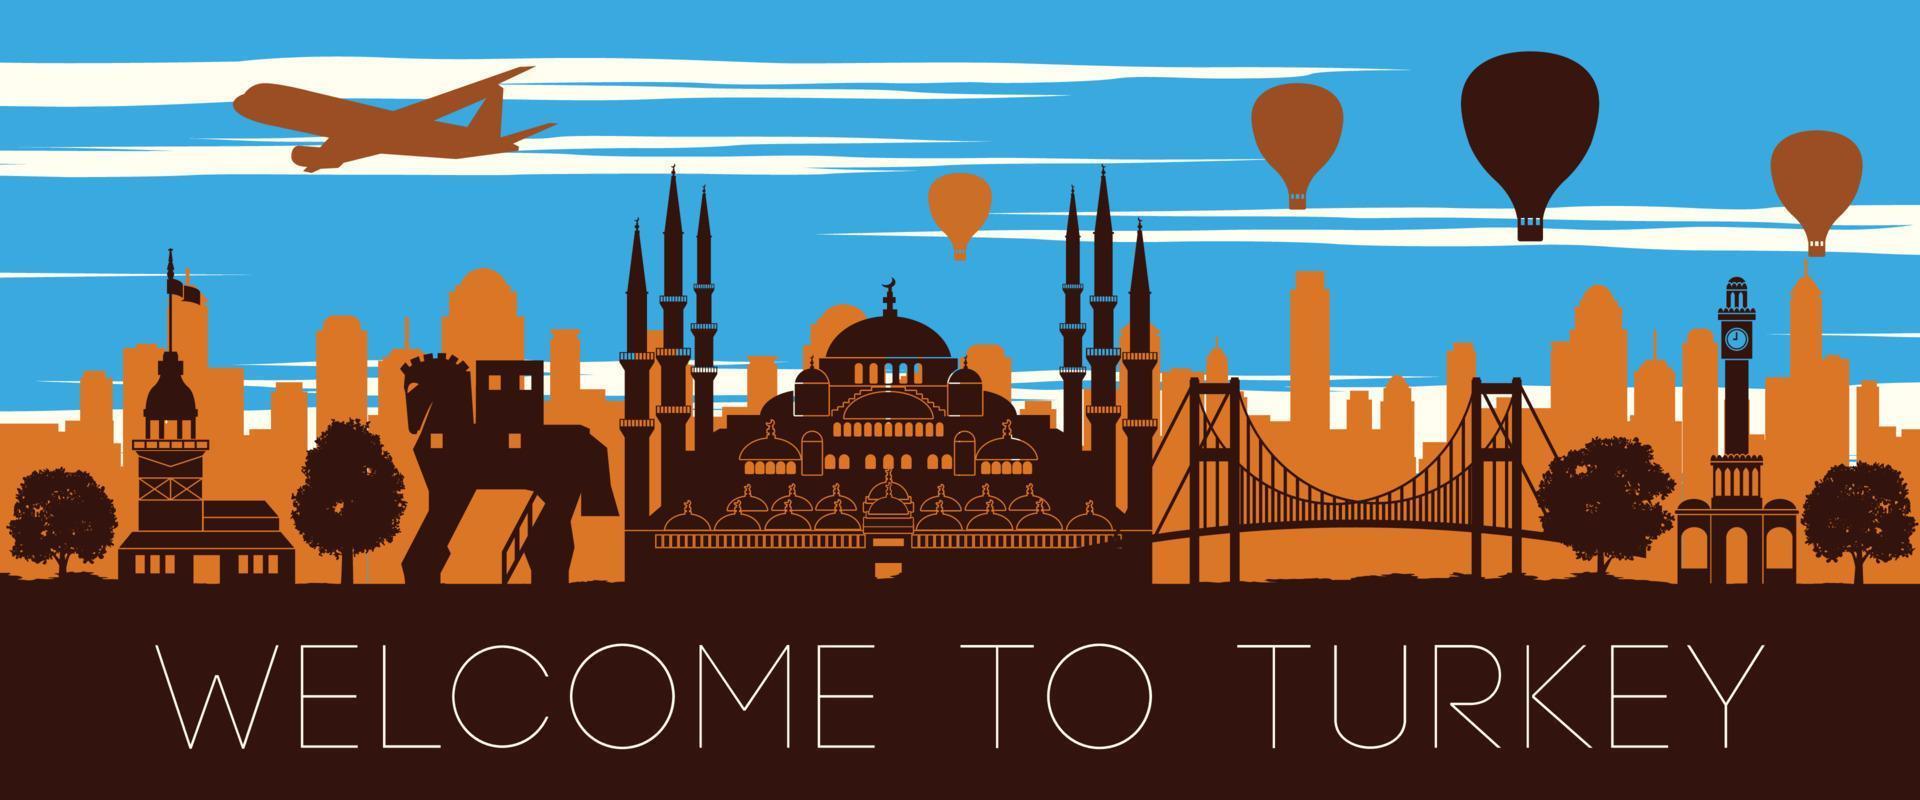 Turkey famous landmark sunset time silhouette design vector